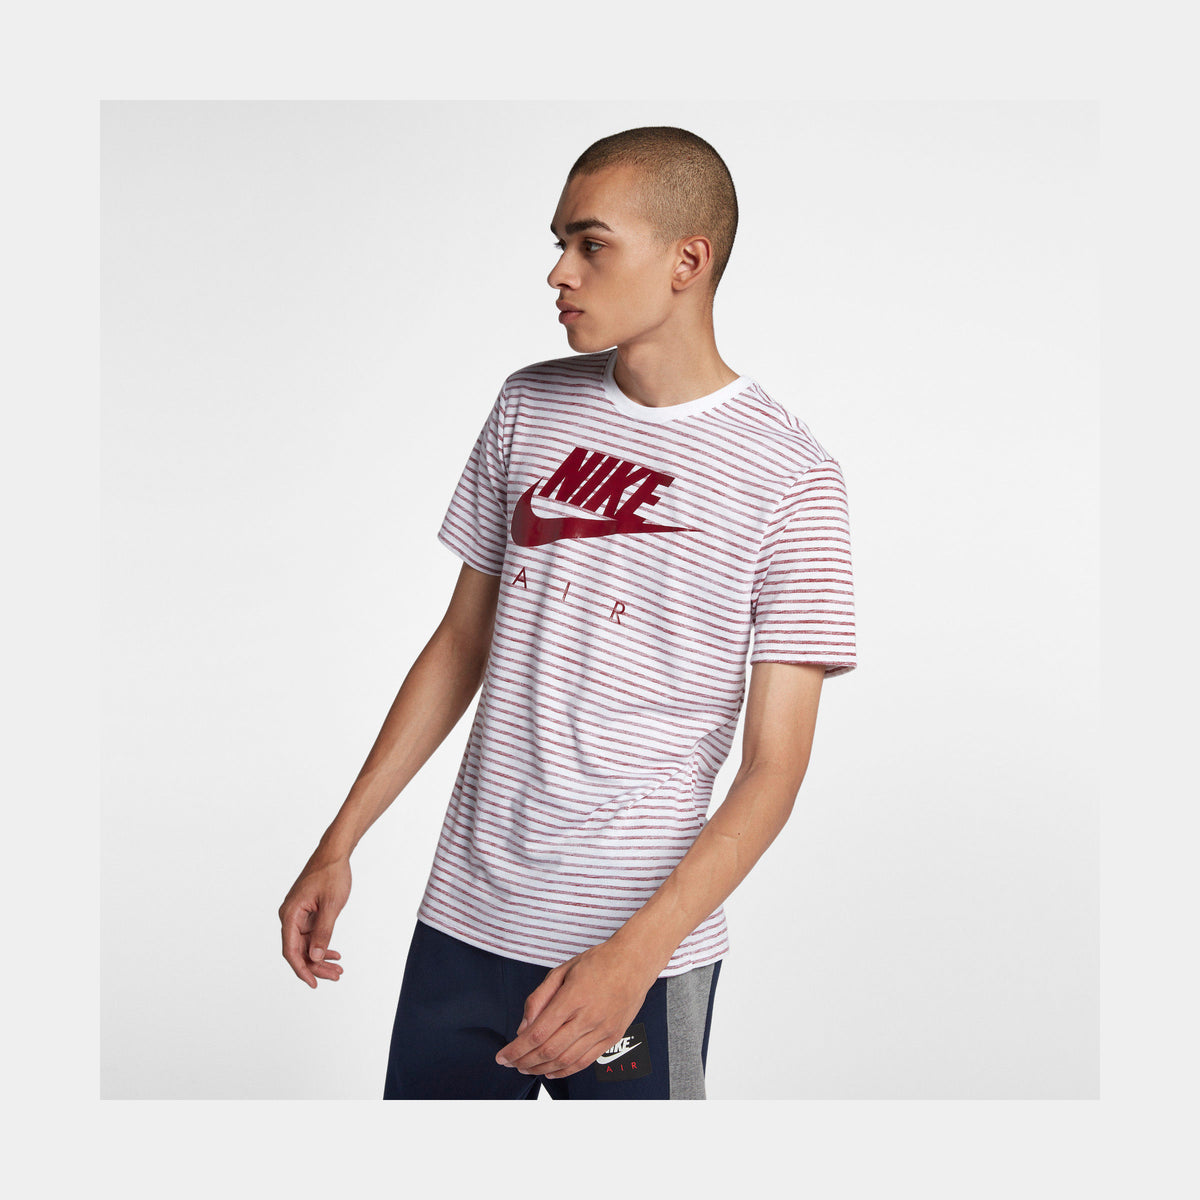 Nike Sportswear Air Max 90 Mens T-Shirt White Red 892213-101 